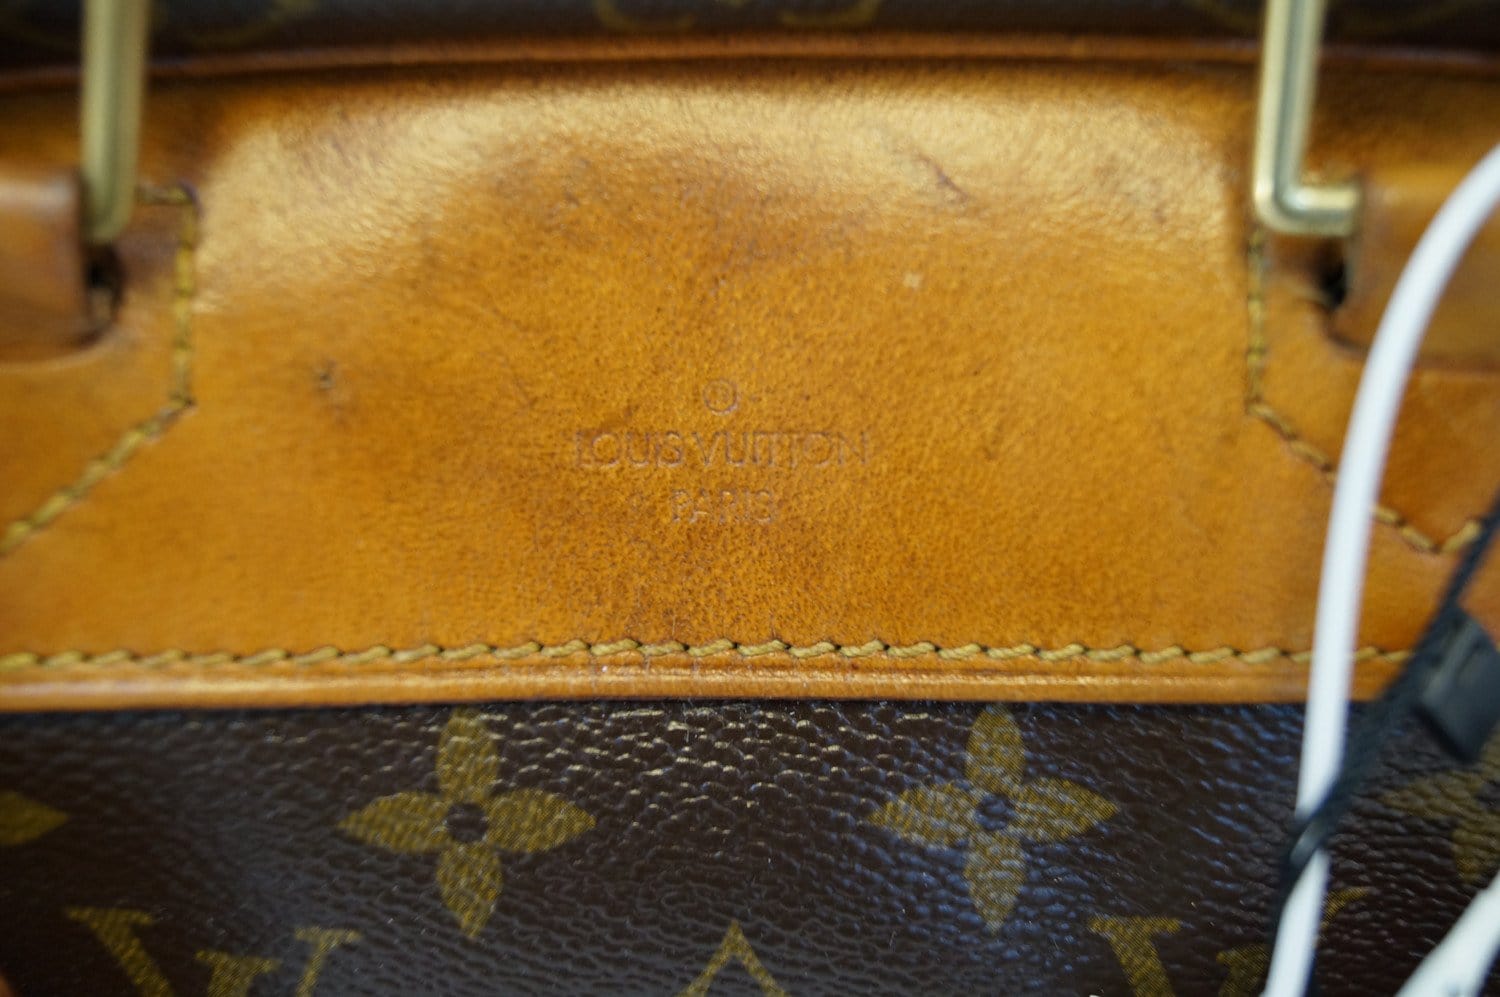 Louis Vuitton, Bags, Soldauthentic Louis Vuitton Deauville